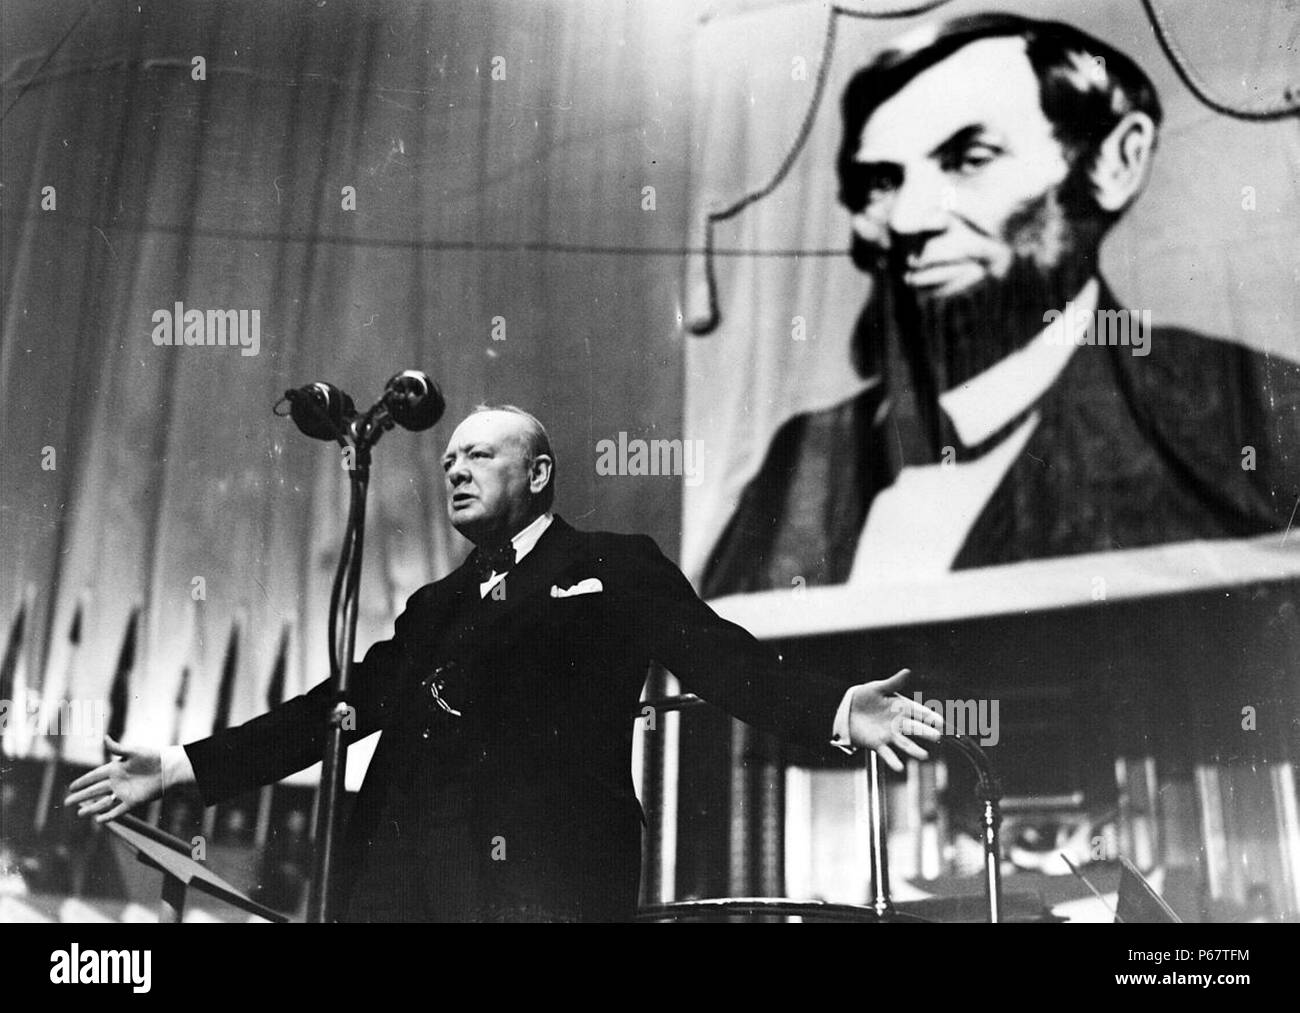 Photo de Winston Churchill (1874-1965), parlant à l'Albert Hall devant une grande photo d'Abraham Lincoln (1809-1865). Datée 1944 Banque D'Images